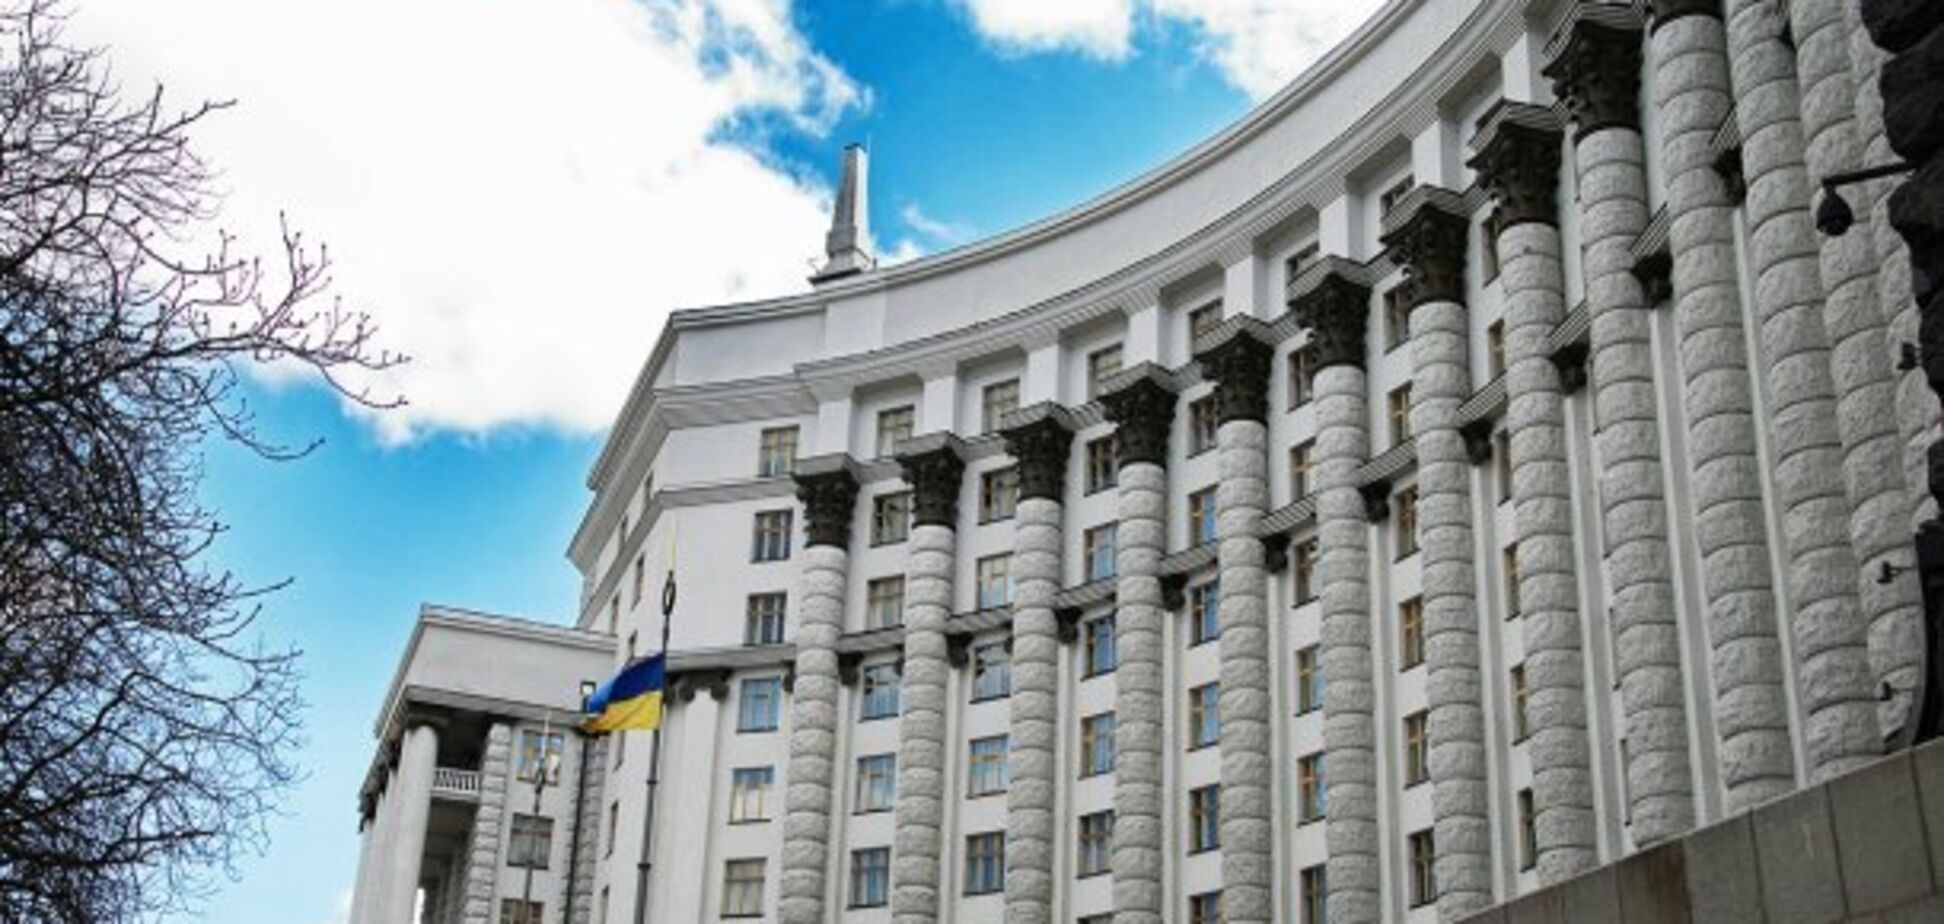 Найліберальніший Уряд світу в Україні: як з ним боротись?